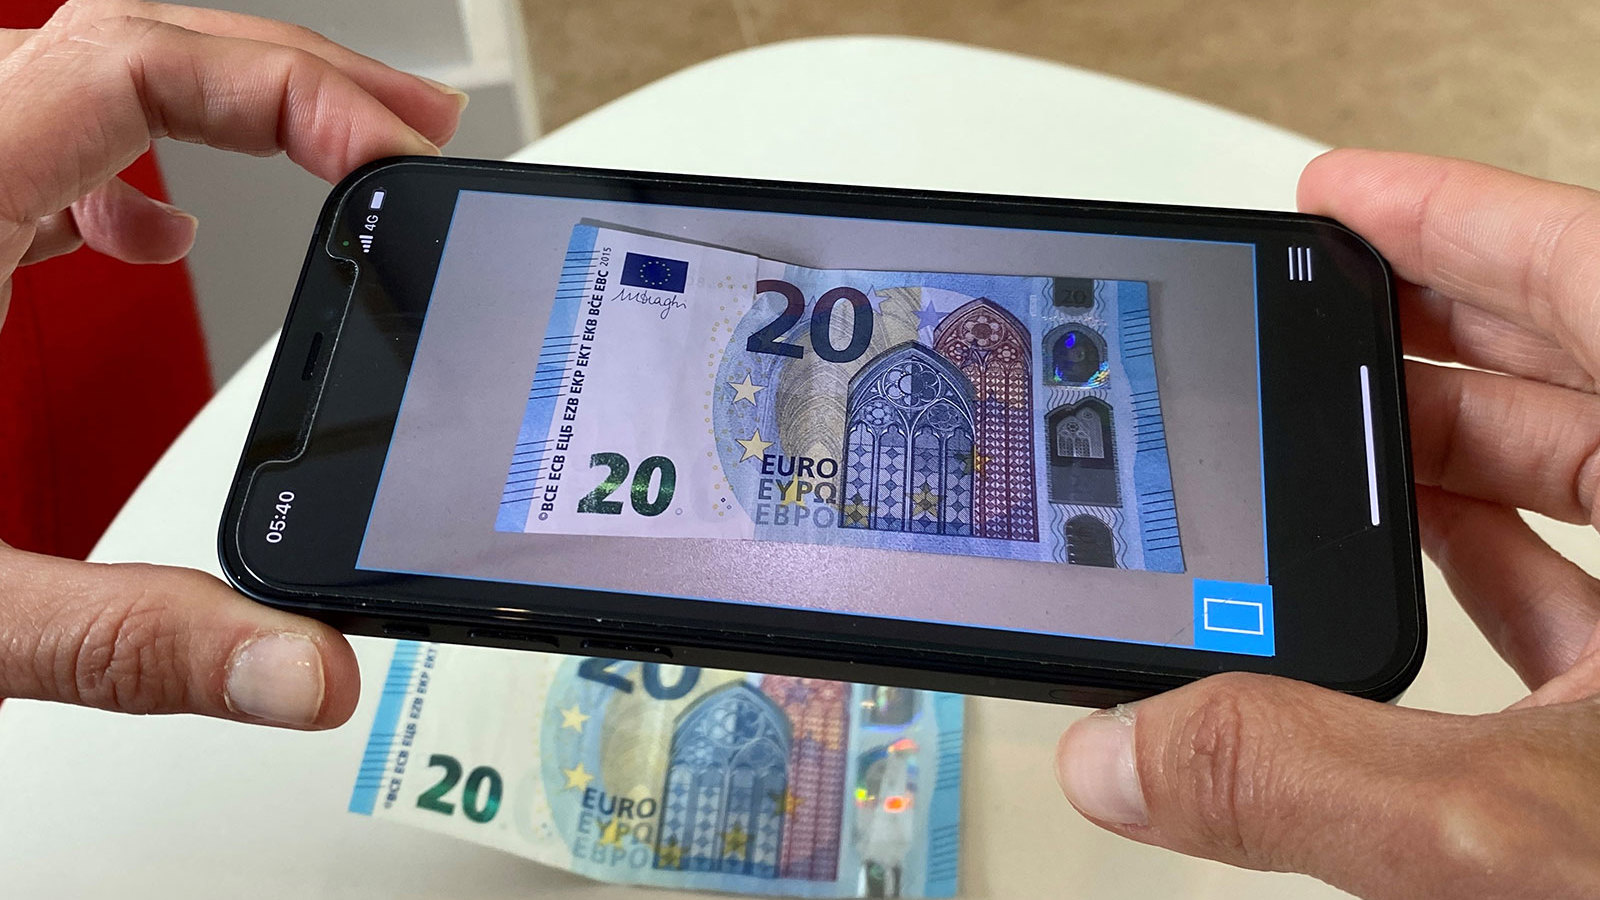 Vals geld app in gebruik met 20 euro